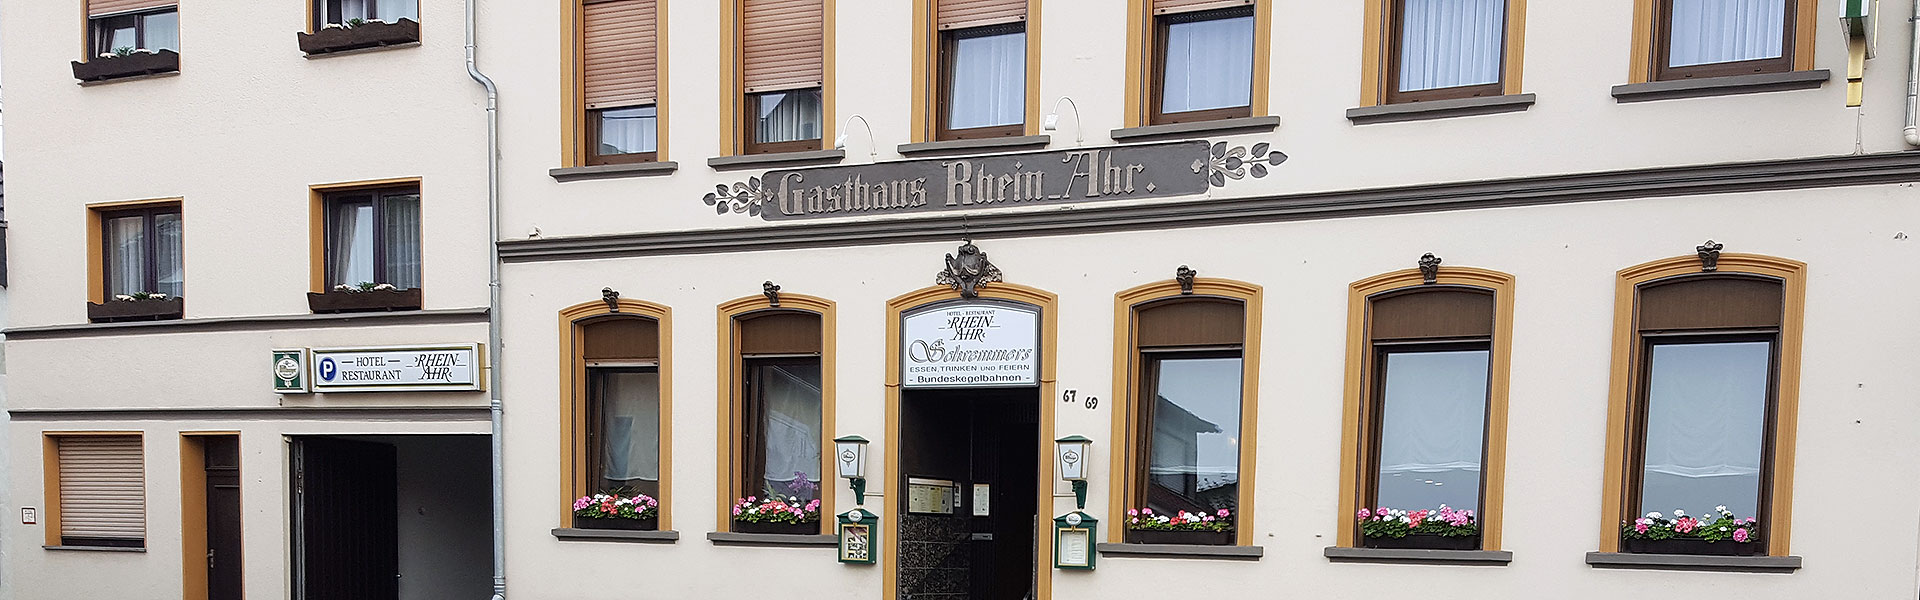 Hotel & Restaurant - Rhein-Ahr